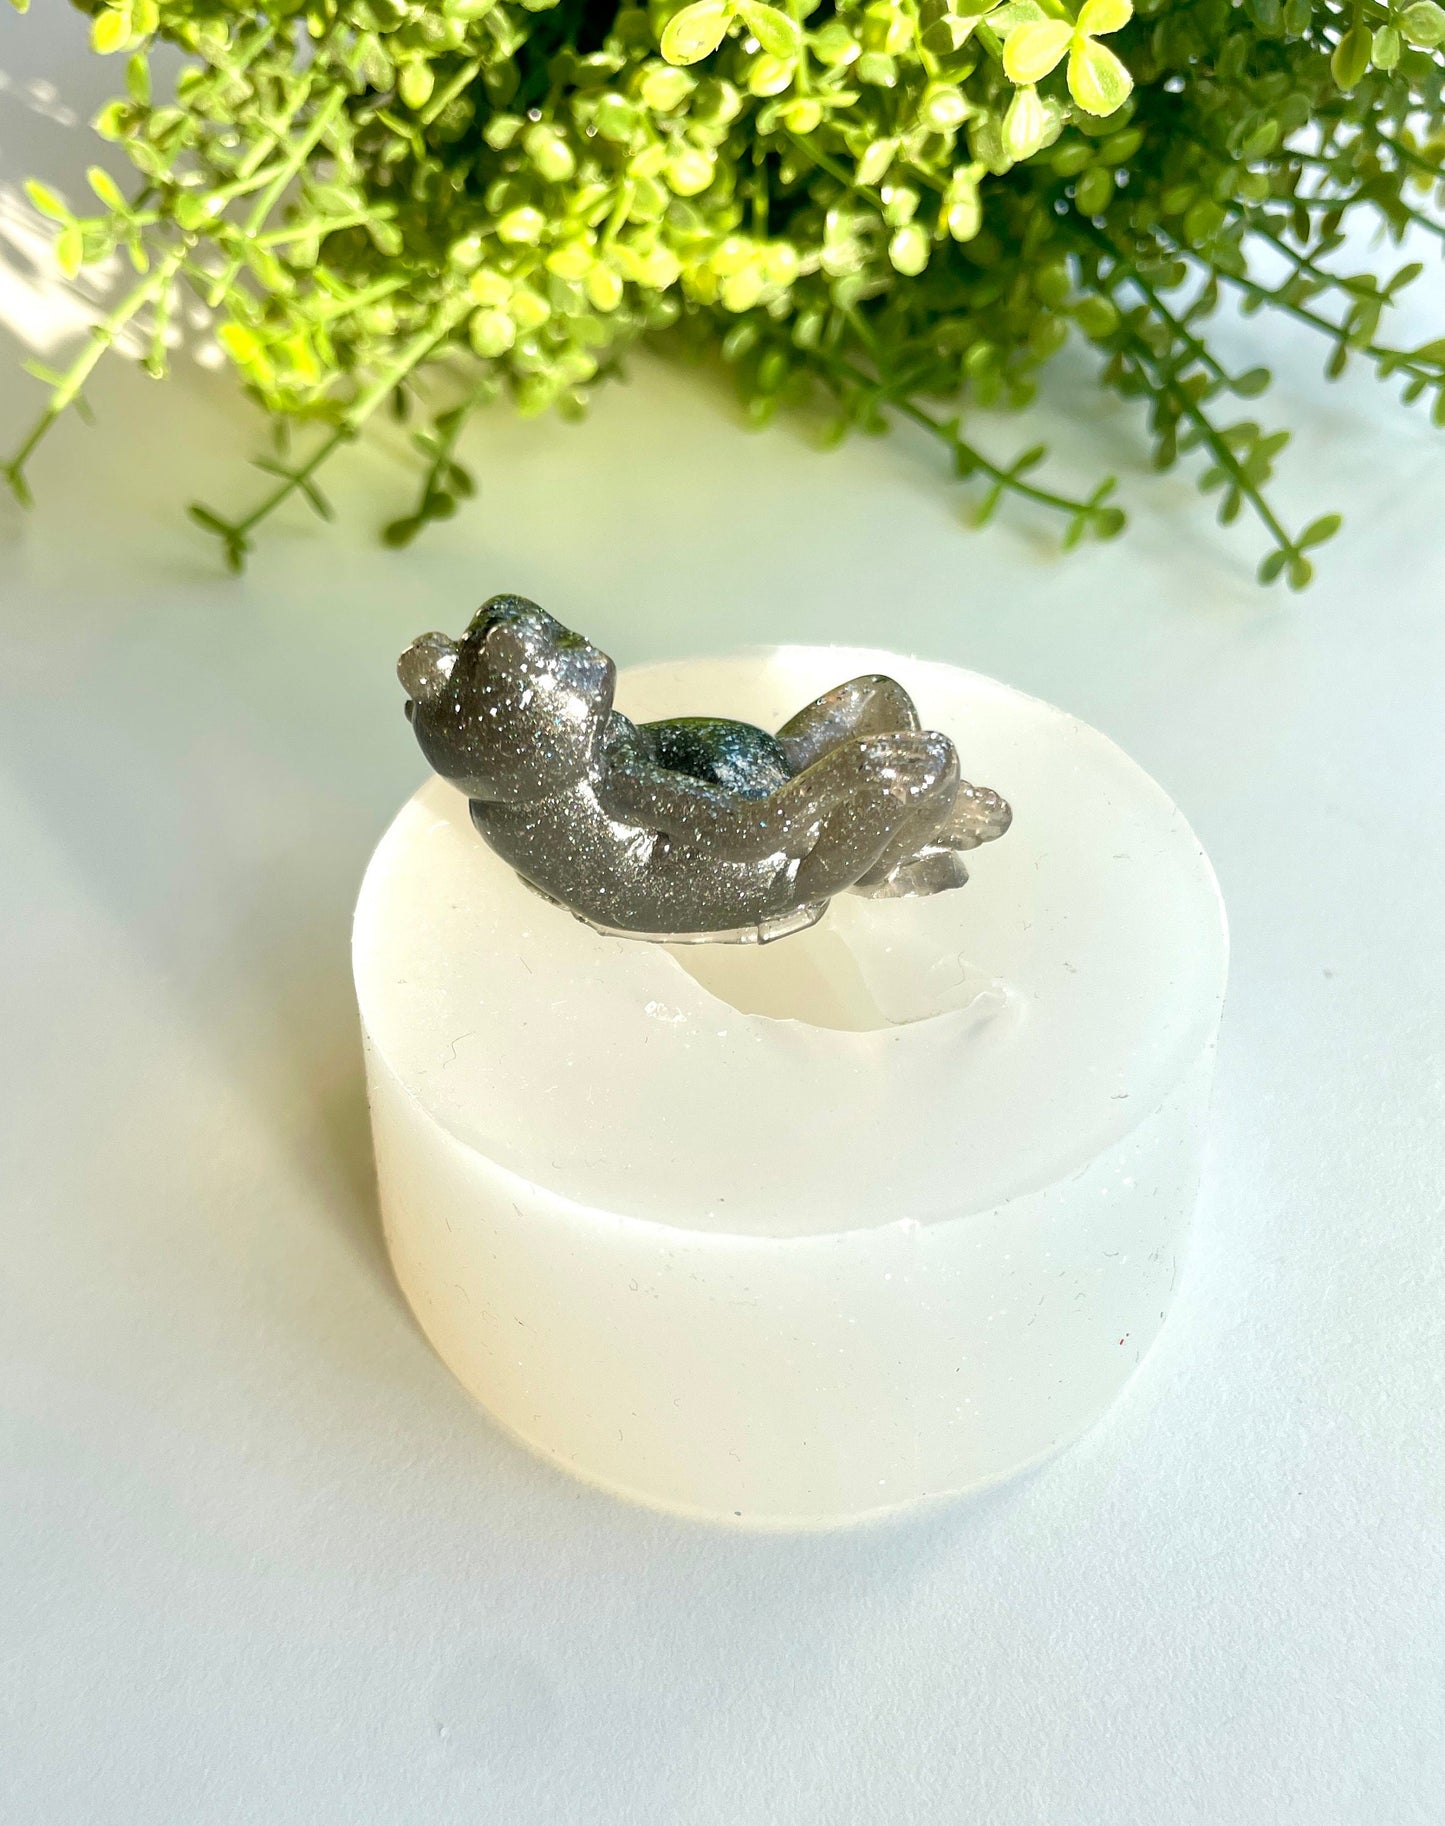 Силиконовая форма для лягушки: эпоксидная смола, глина, фигурки, форма для лягушки